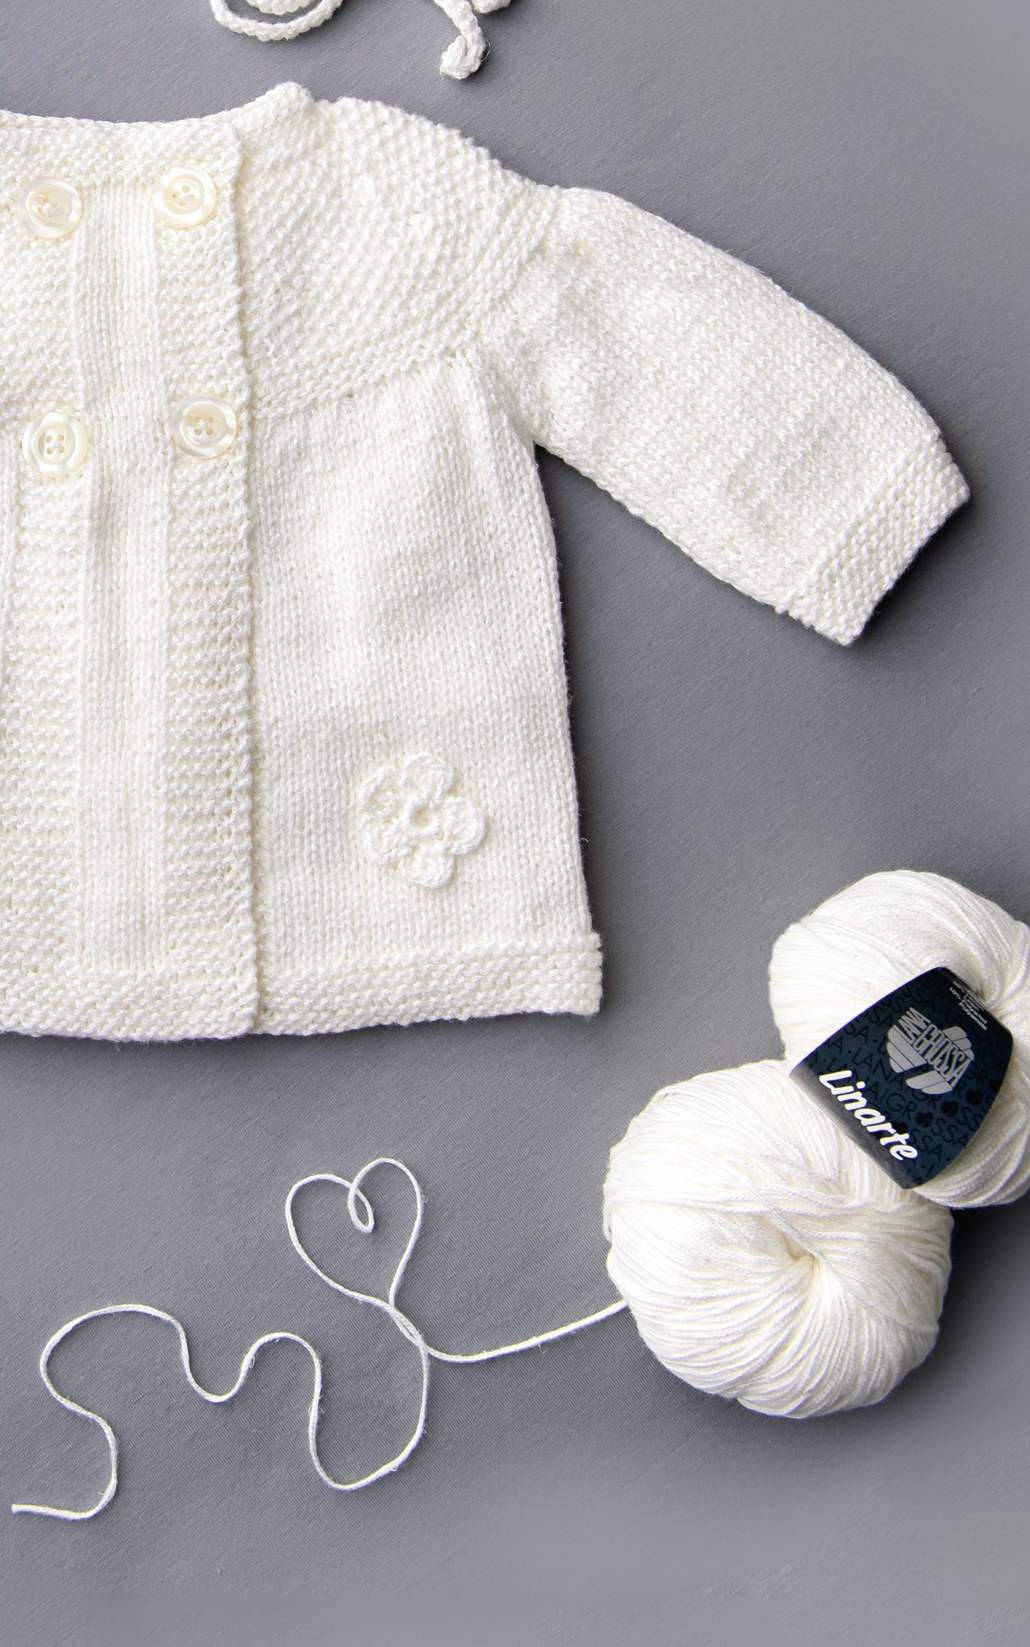 Baby Mantel mit Perlmuster und Häkelblümchen - Strickset von LANA GROSSA jetzt online kaufen bei OONIQUE